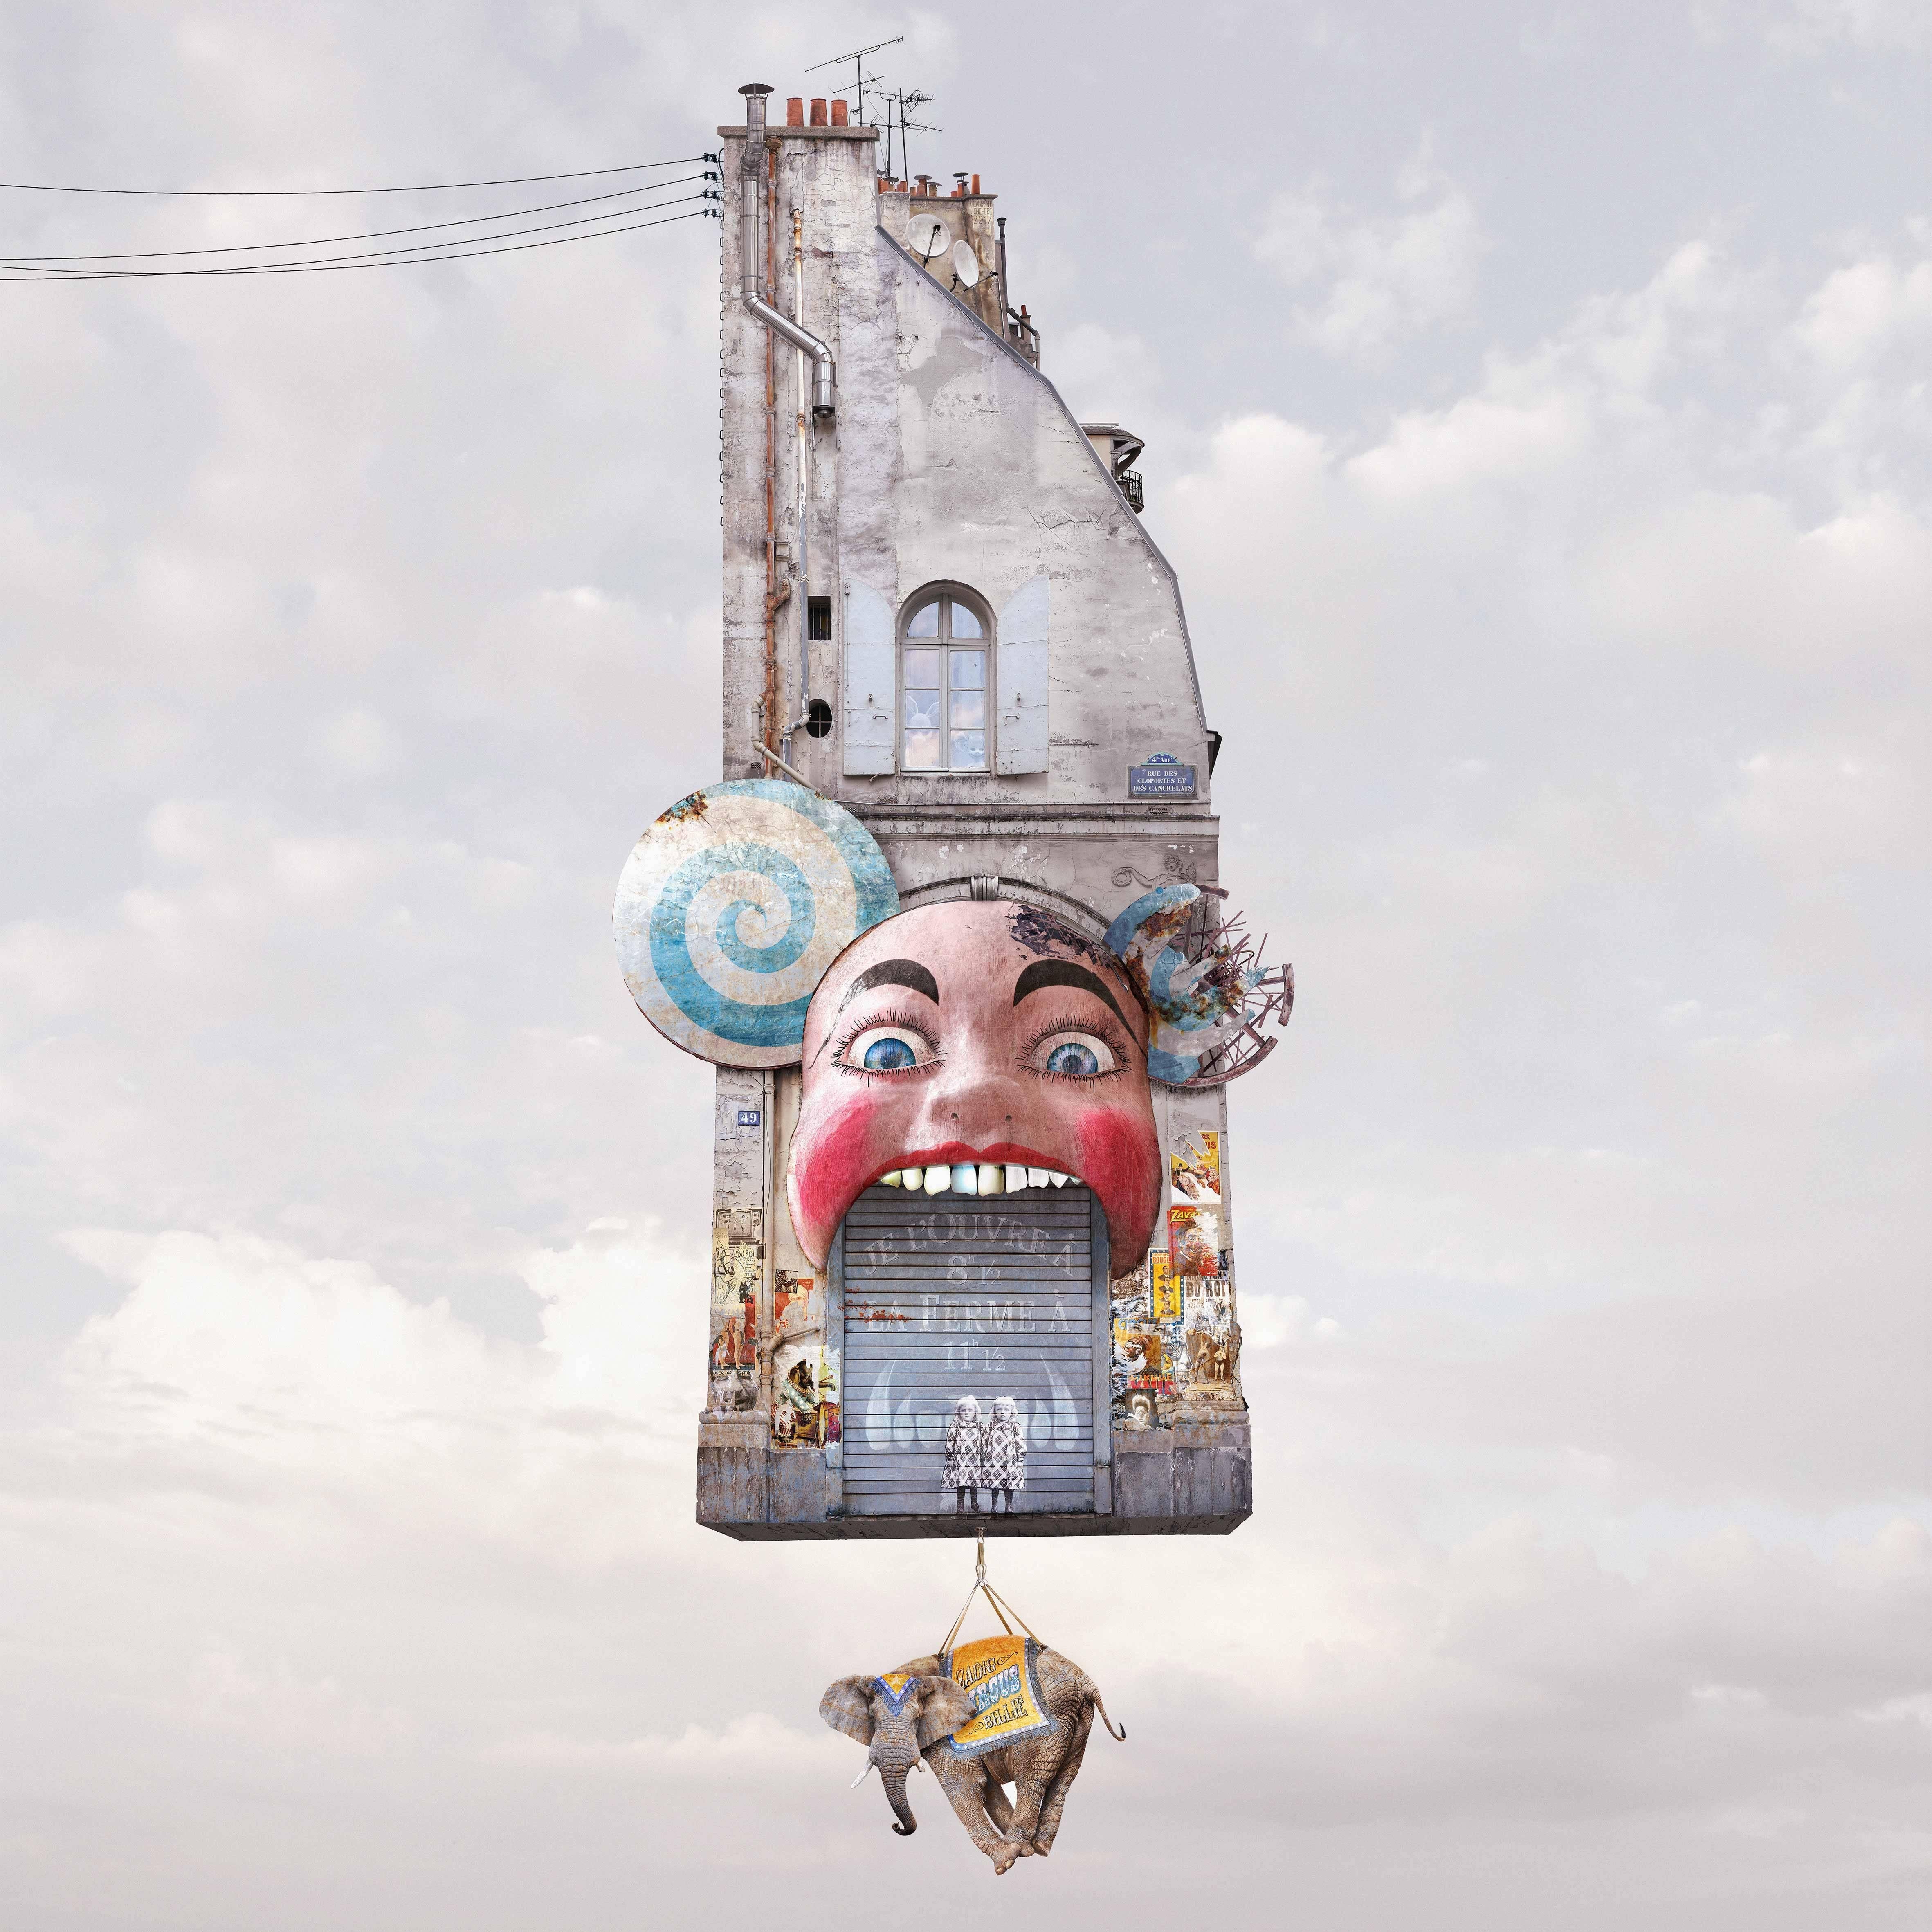 Laurent Chéhère Color Photograph - Cabaret - Contemporary whimsical digital color photo of a Parisian flying house